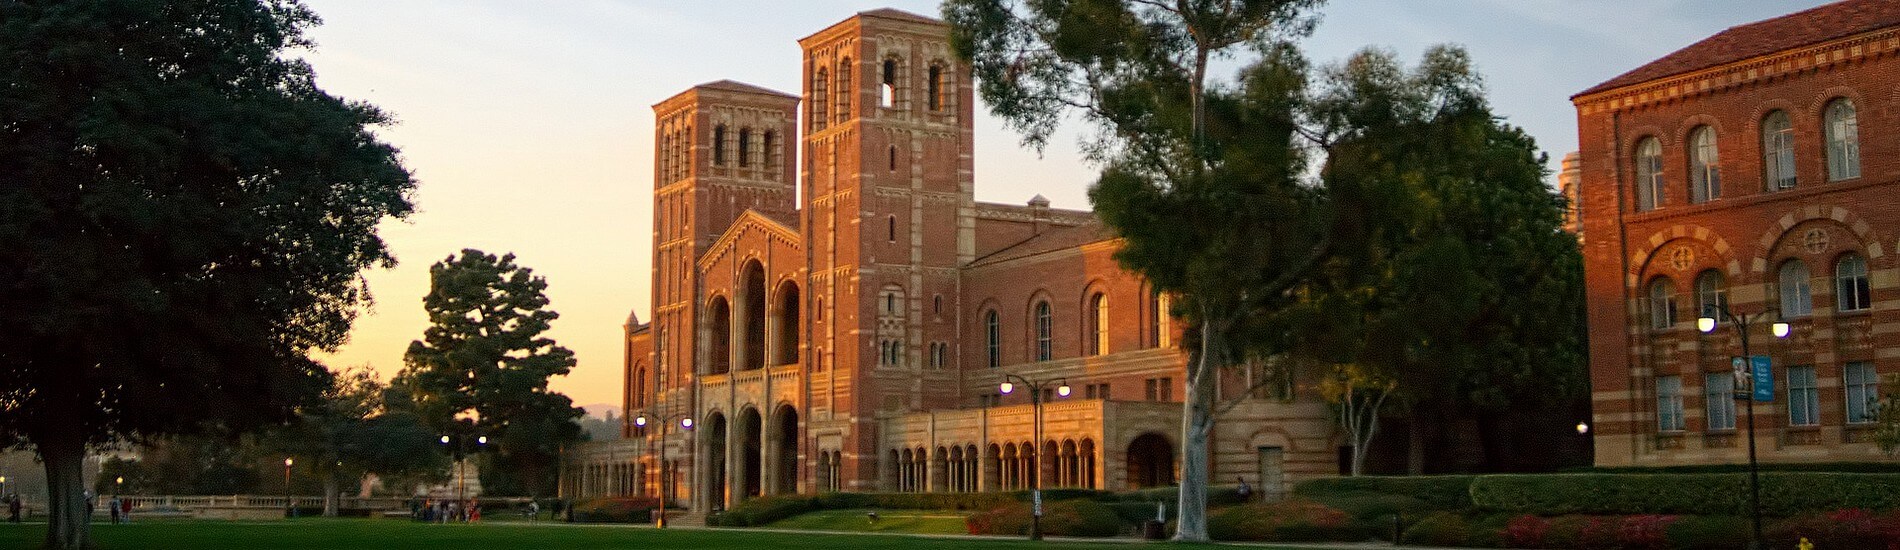 Séjour linguistique Los Angeles – UCLA Anderson School of Management